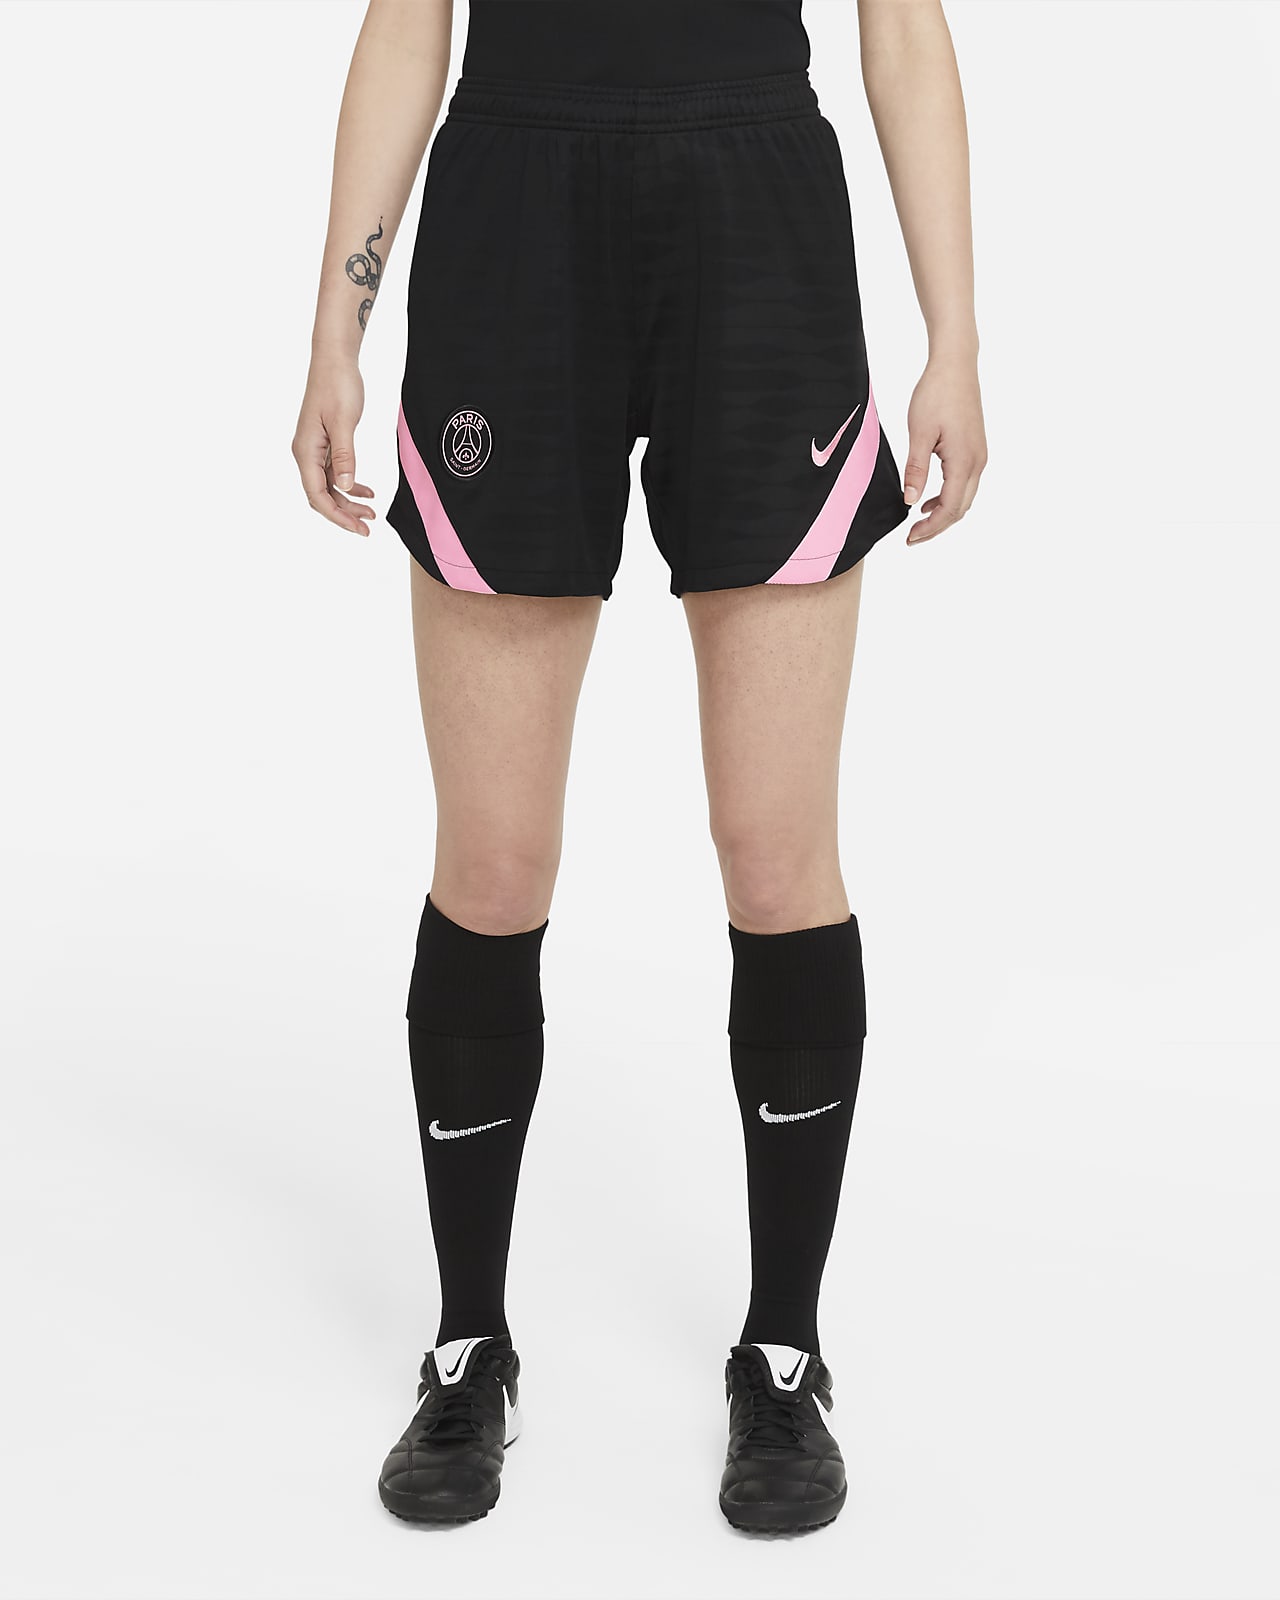 Missend Zonder twijfel Visser Paris Saint-Germain Strike Uit Nike knit voetbalshorts met Dri-FIT voor  dames. Nike NL